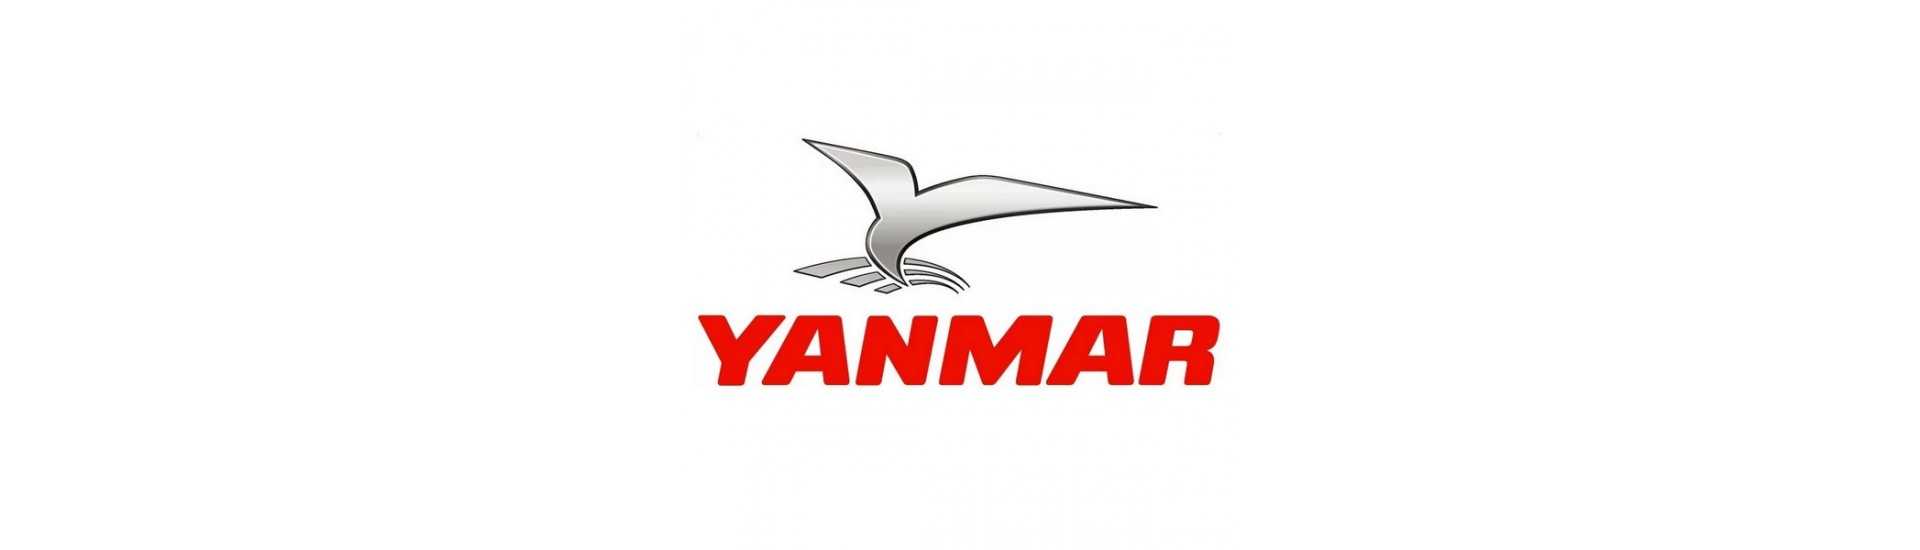 Engine parts Yanmar au meilleur prix pour voiture sans permis